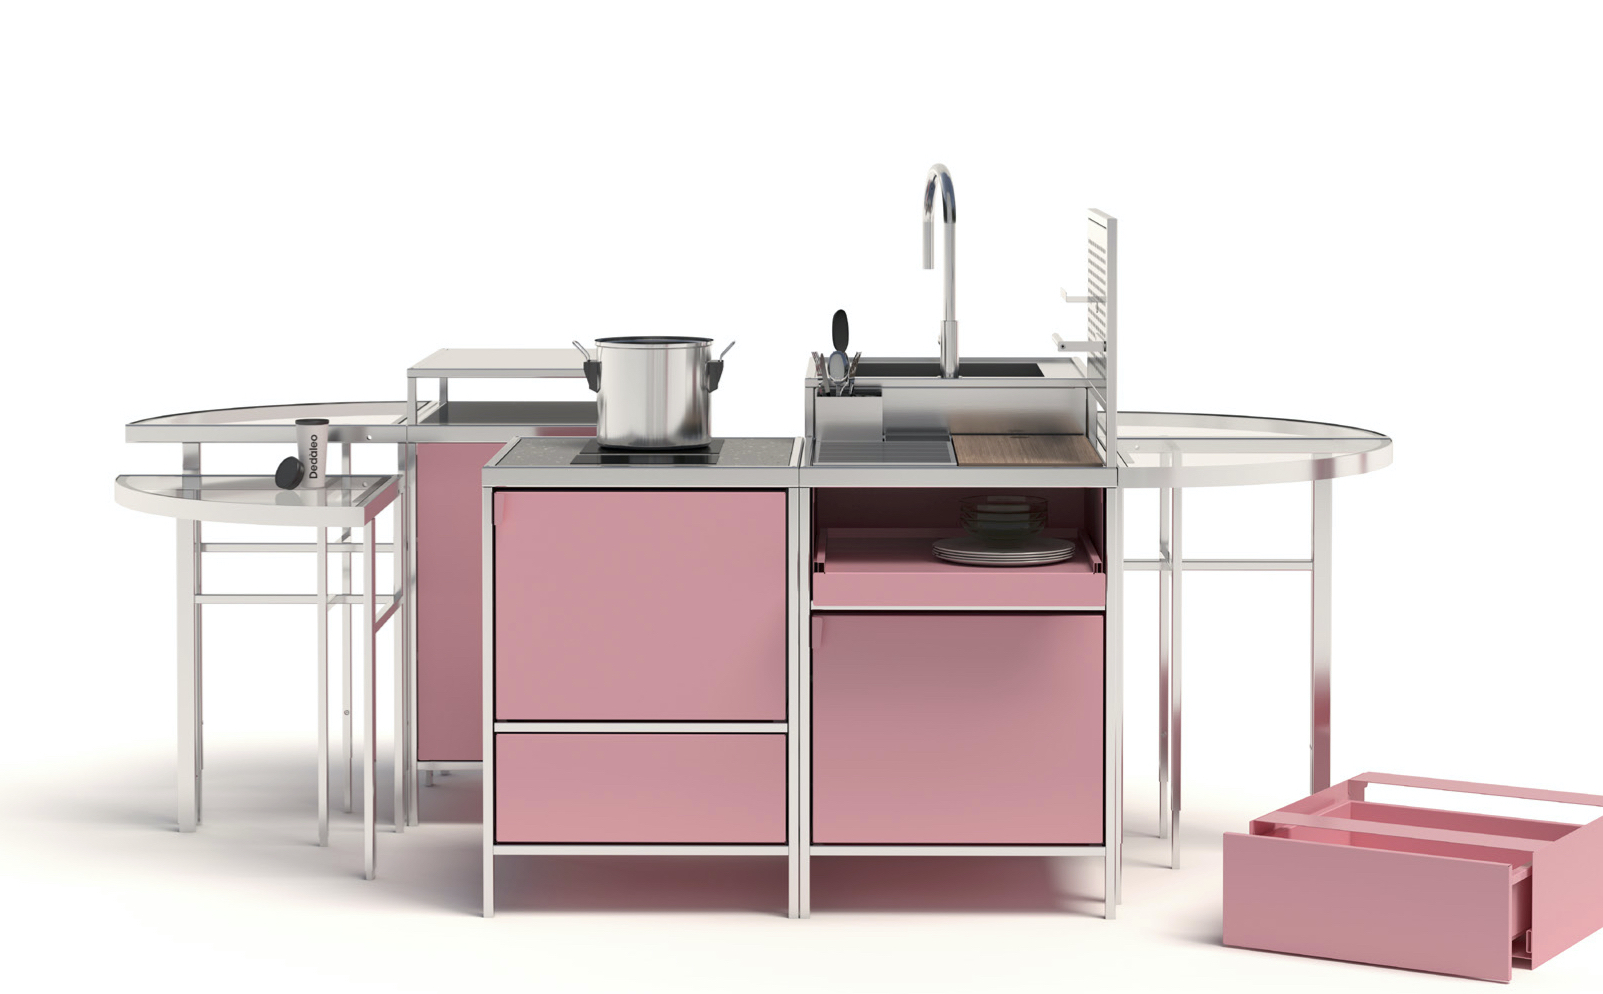 Image of a modular pink kitchen